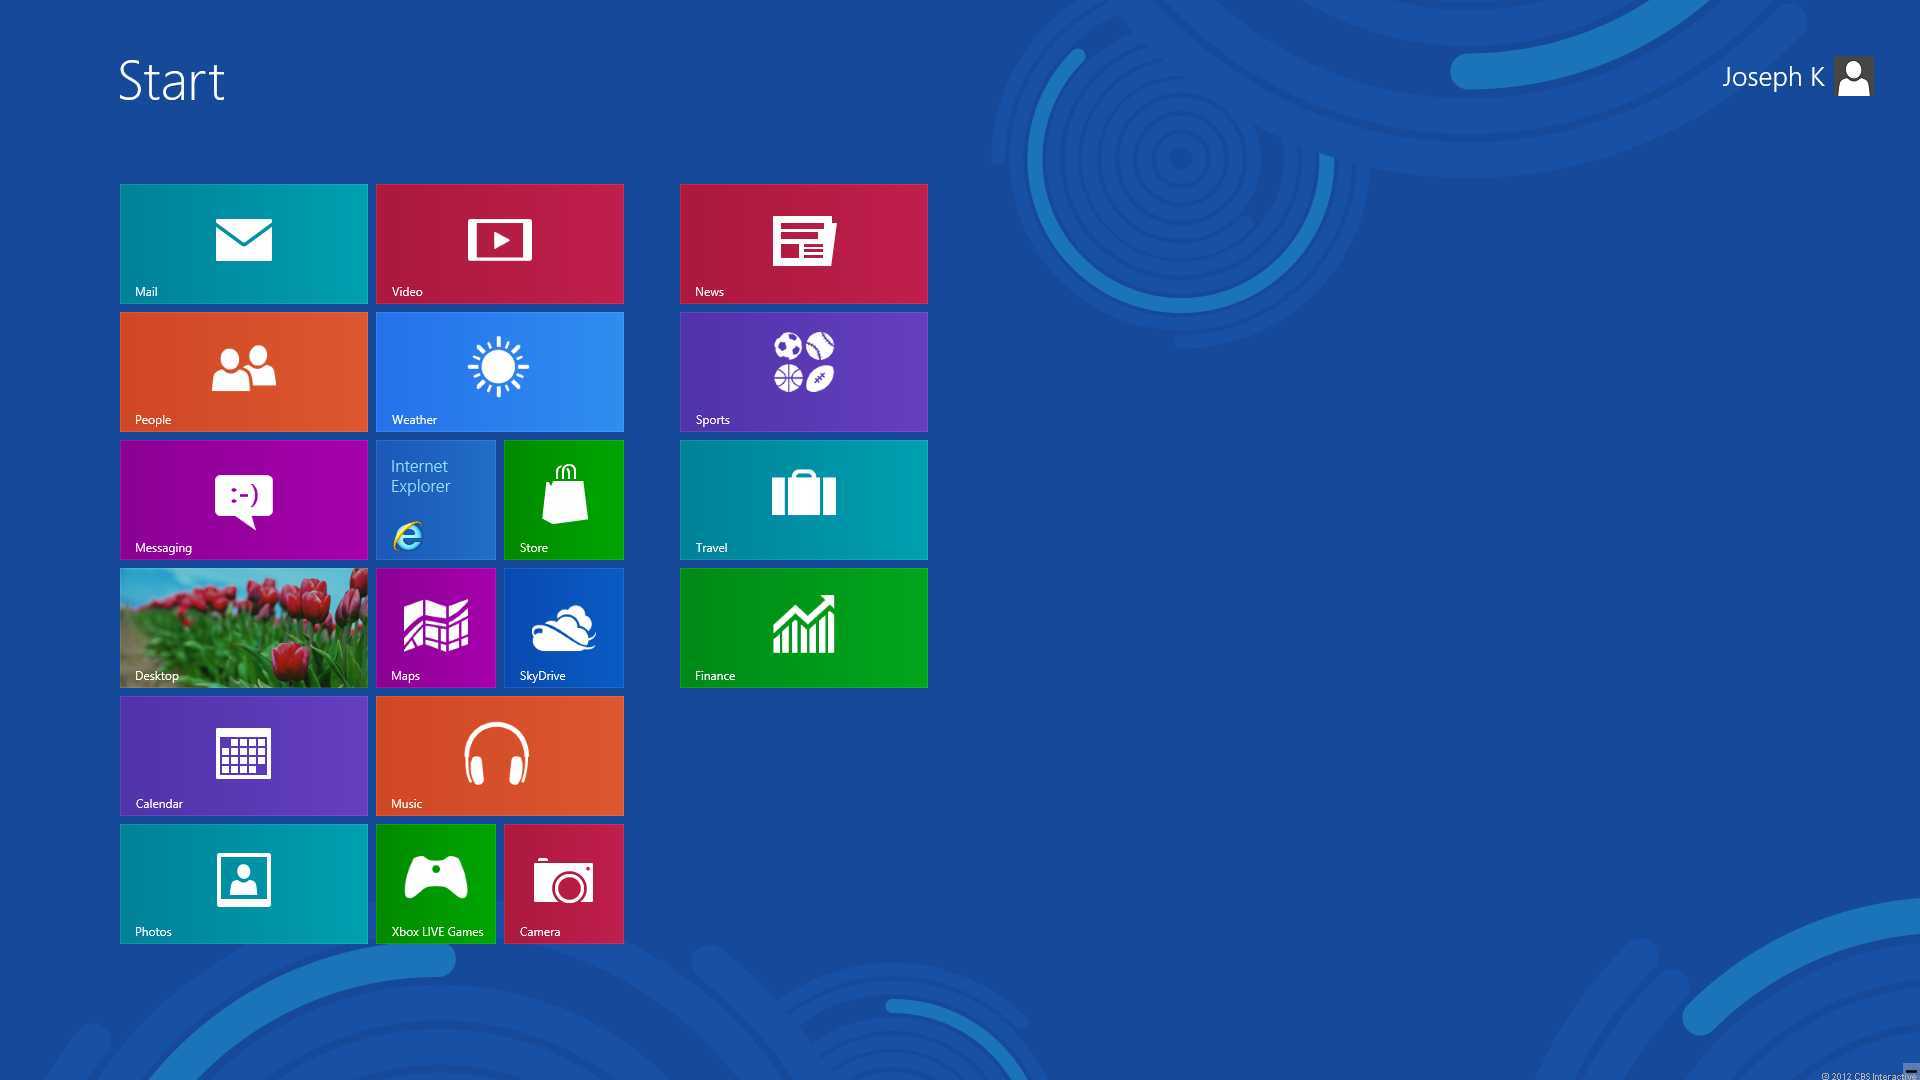 Free download Go Back Pix For Windows 8 Default Desktop [1920x1080] for